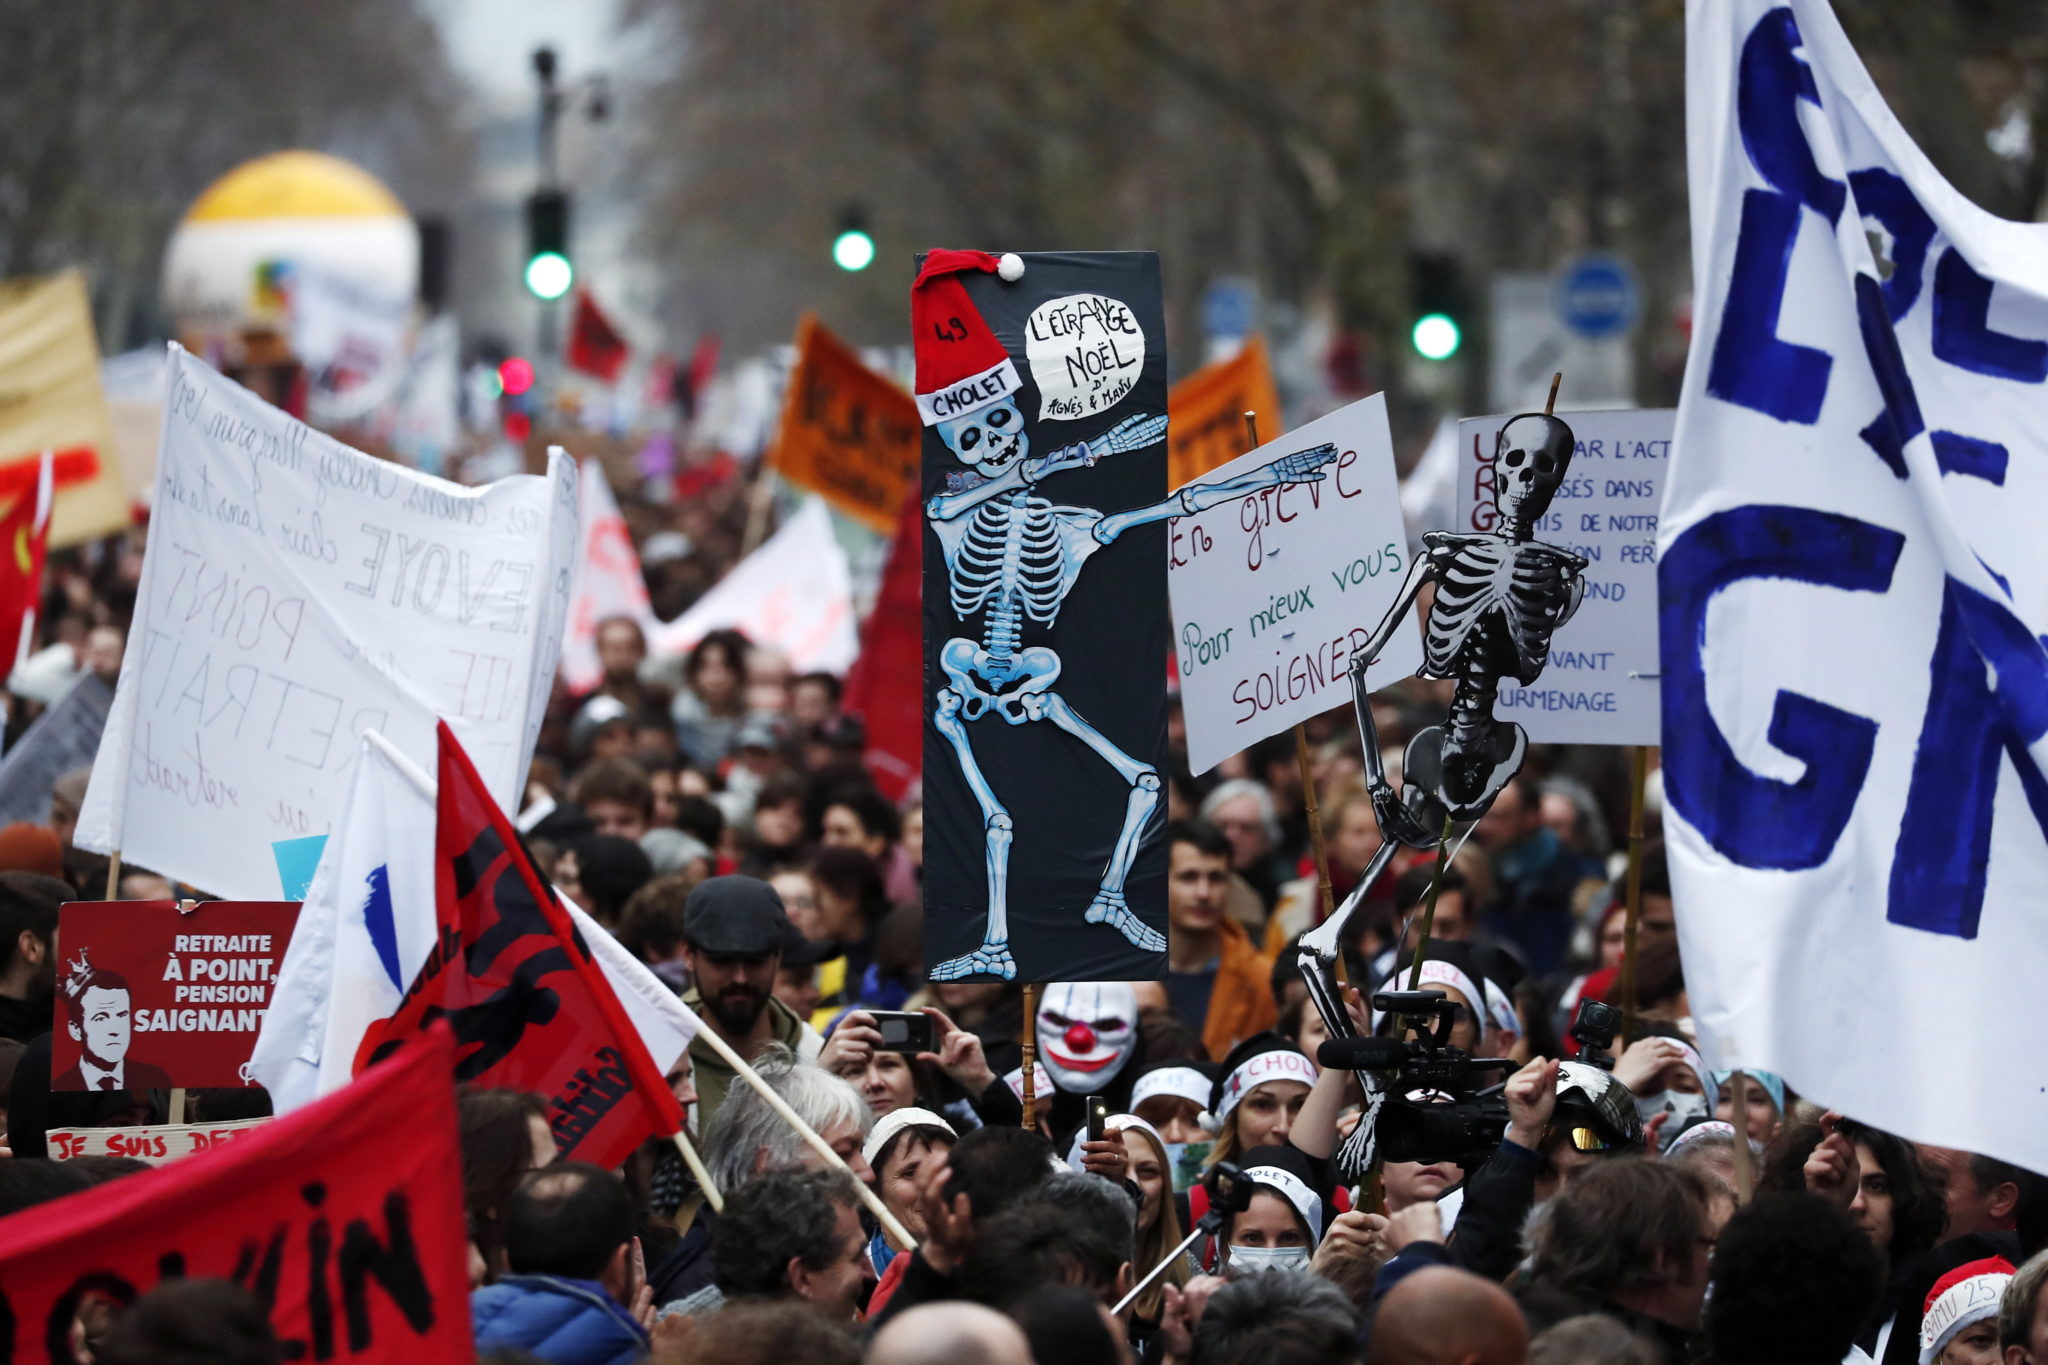 We Francji już 13. dzień strajku generalnego. Krajowe związki zawodowe, wzywające rząd do wycofania się z reformy emerytalnej zapowiadają, że nie przerwą protestu w święta Bożego Narodzenia fot. EPA/IAN LANGSDON